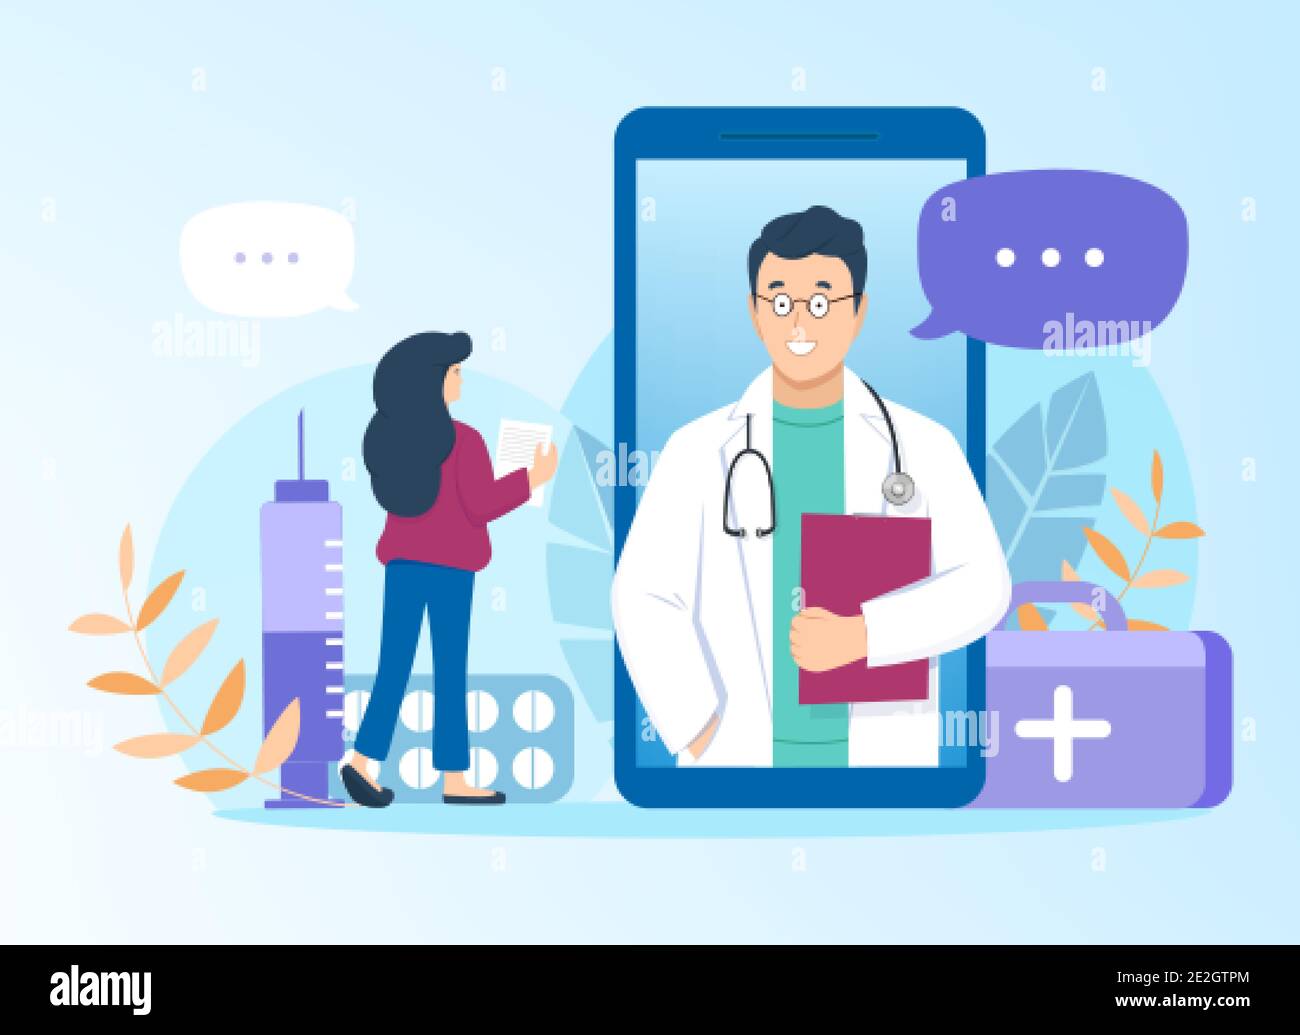 Il medico consulta il paziente online tramite l'applicazione mobile sullo smartphone. Immagine vettoriale piatta su sfondo blu. Supporto farmaceutico, telemedicina e servizi sanitari. Illustrazione Vettoriale